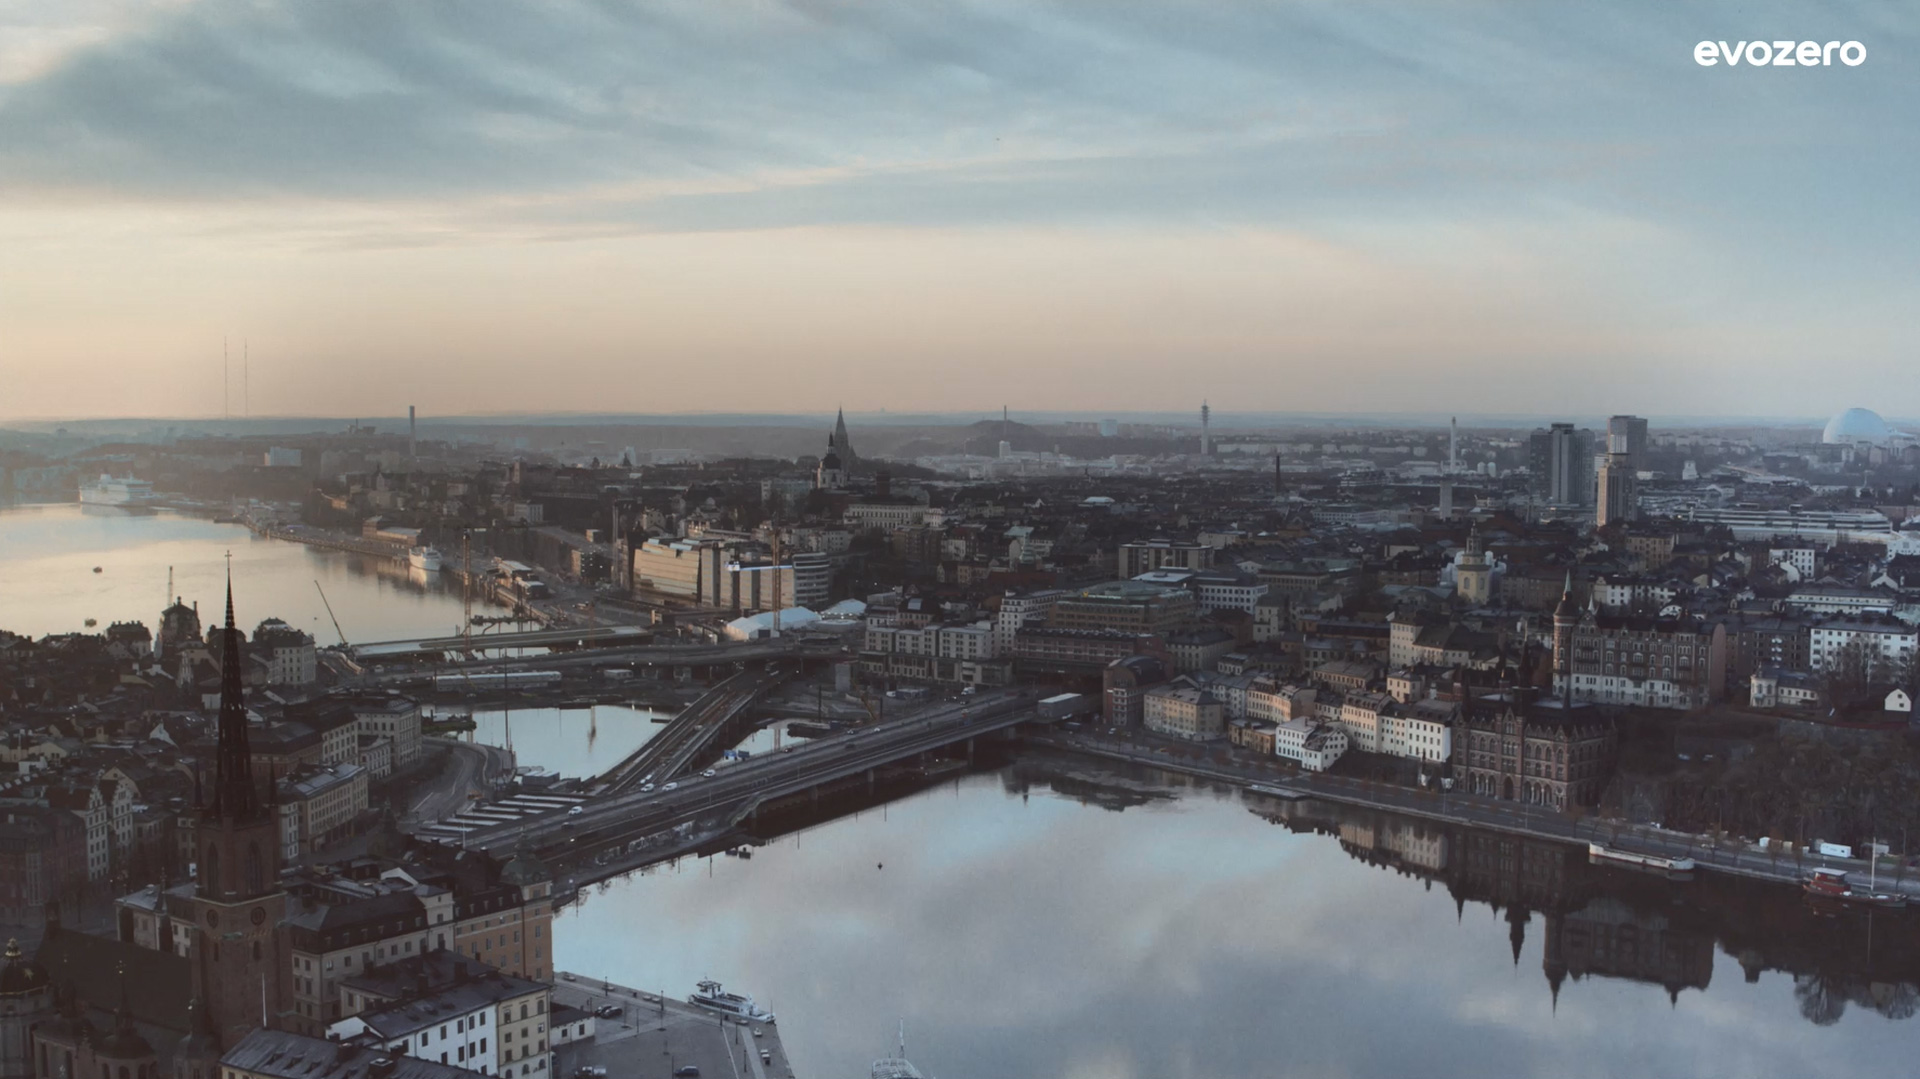 Luftbild von Stockholm bei Dämmerung mit Wasser, Brücken und Gebäuden